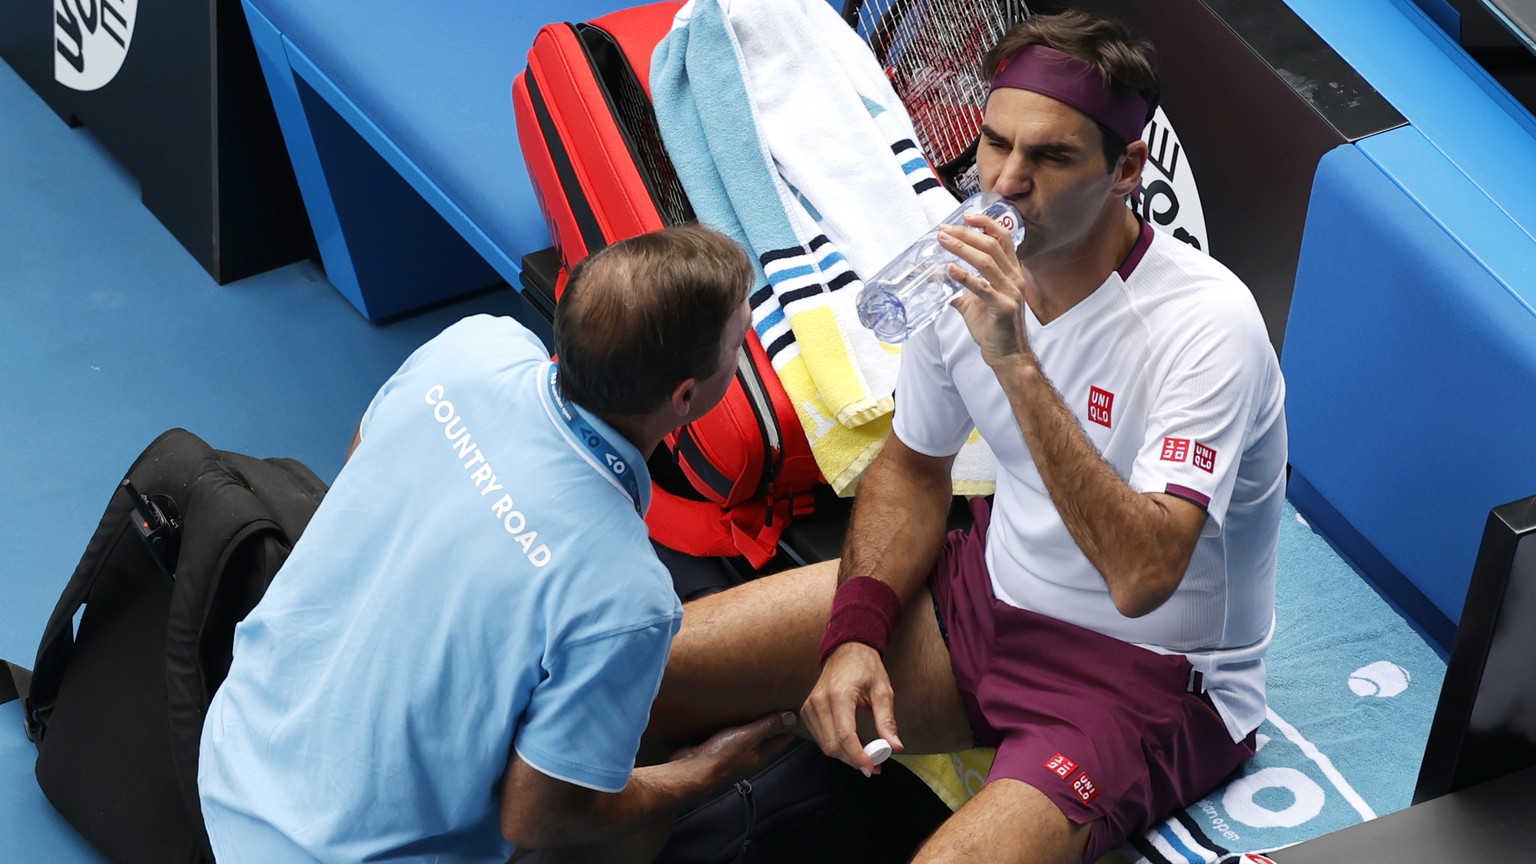 Beim hart umkämpften Sieg gegen Tennys Sandgren musste sich Roger Federer an der Leiste behandeln lassen.